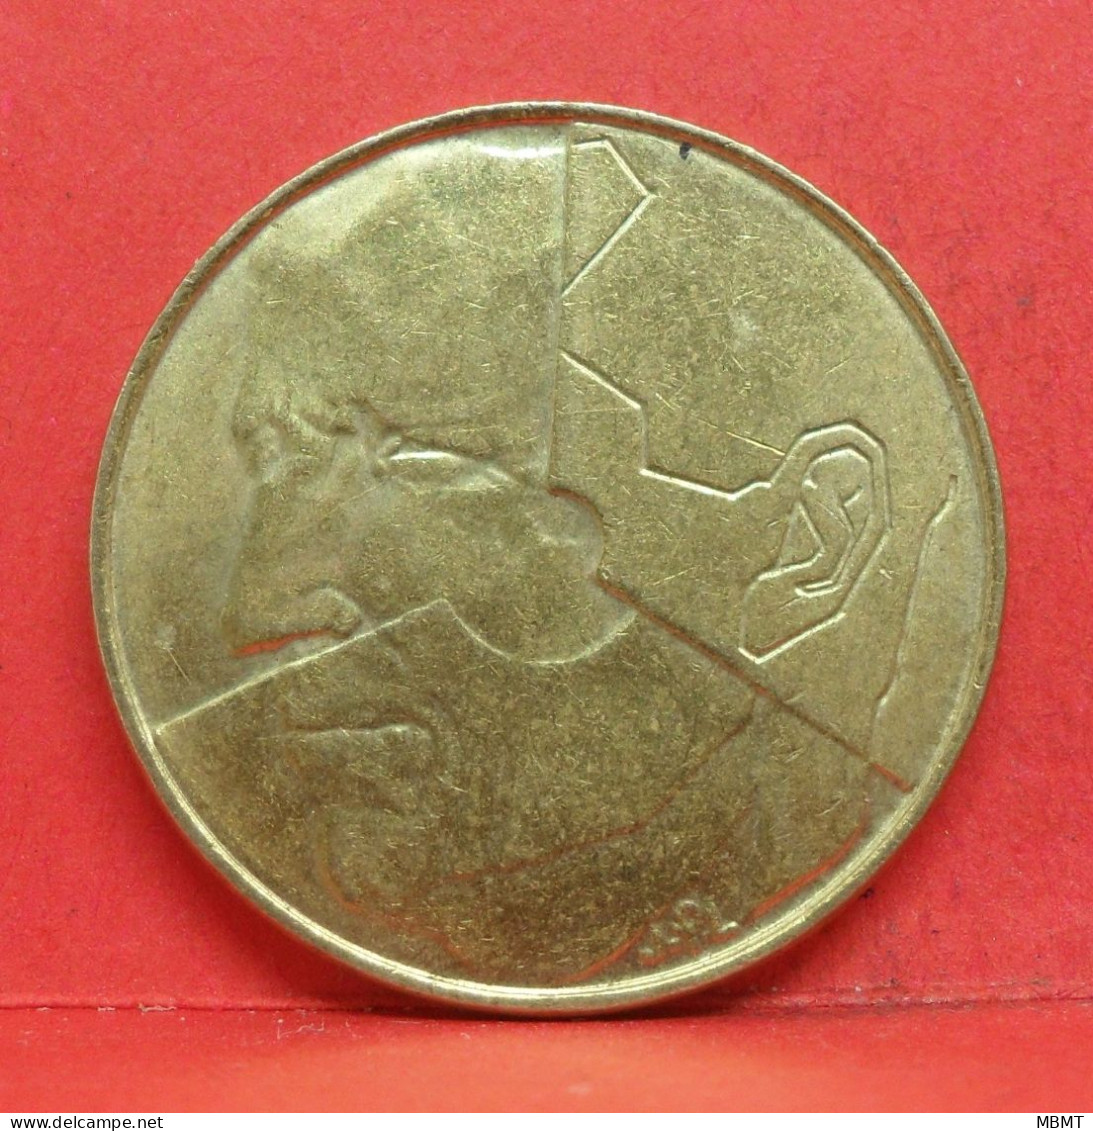 5 Frank 1993 - SUP - Pièce Monnaie Belgie - Article N°2006 - 5 Francs